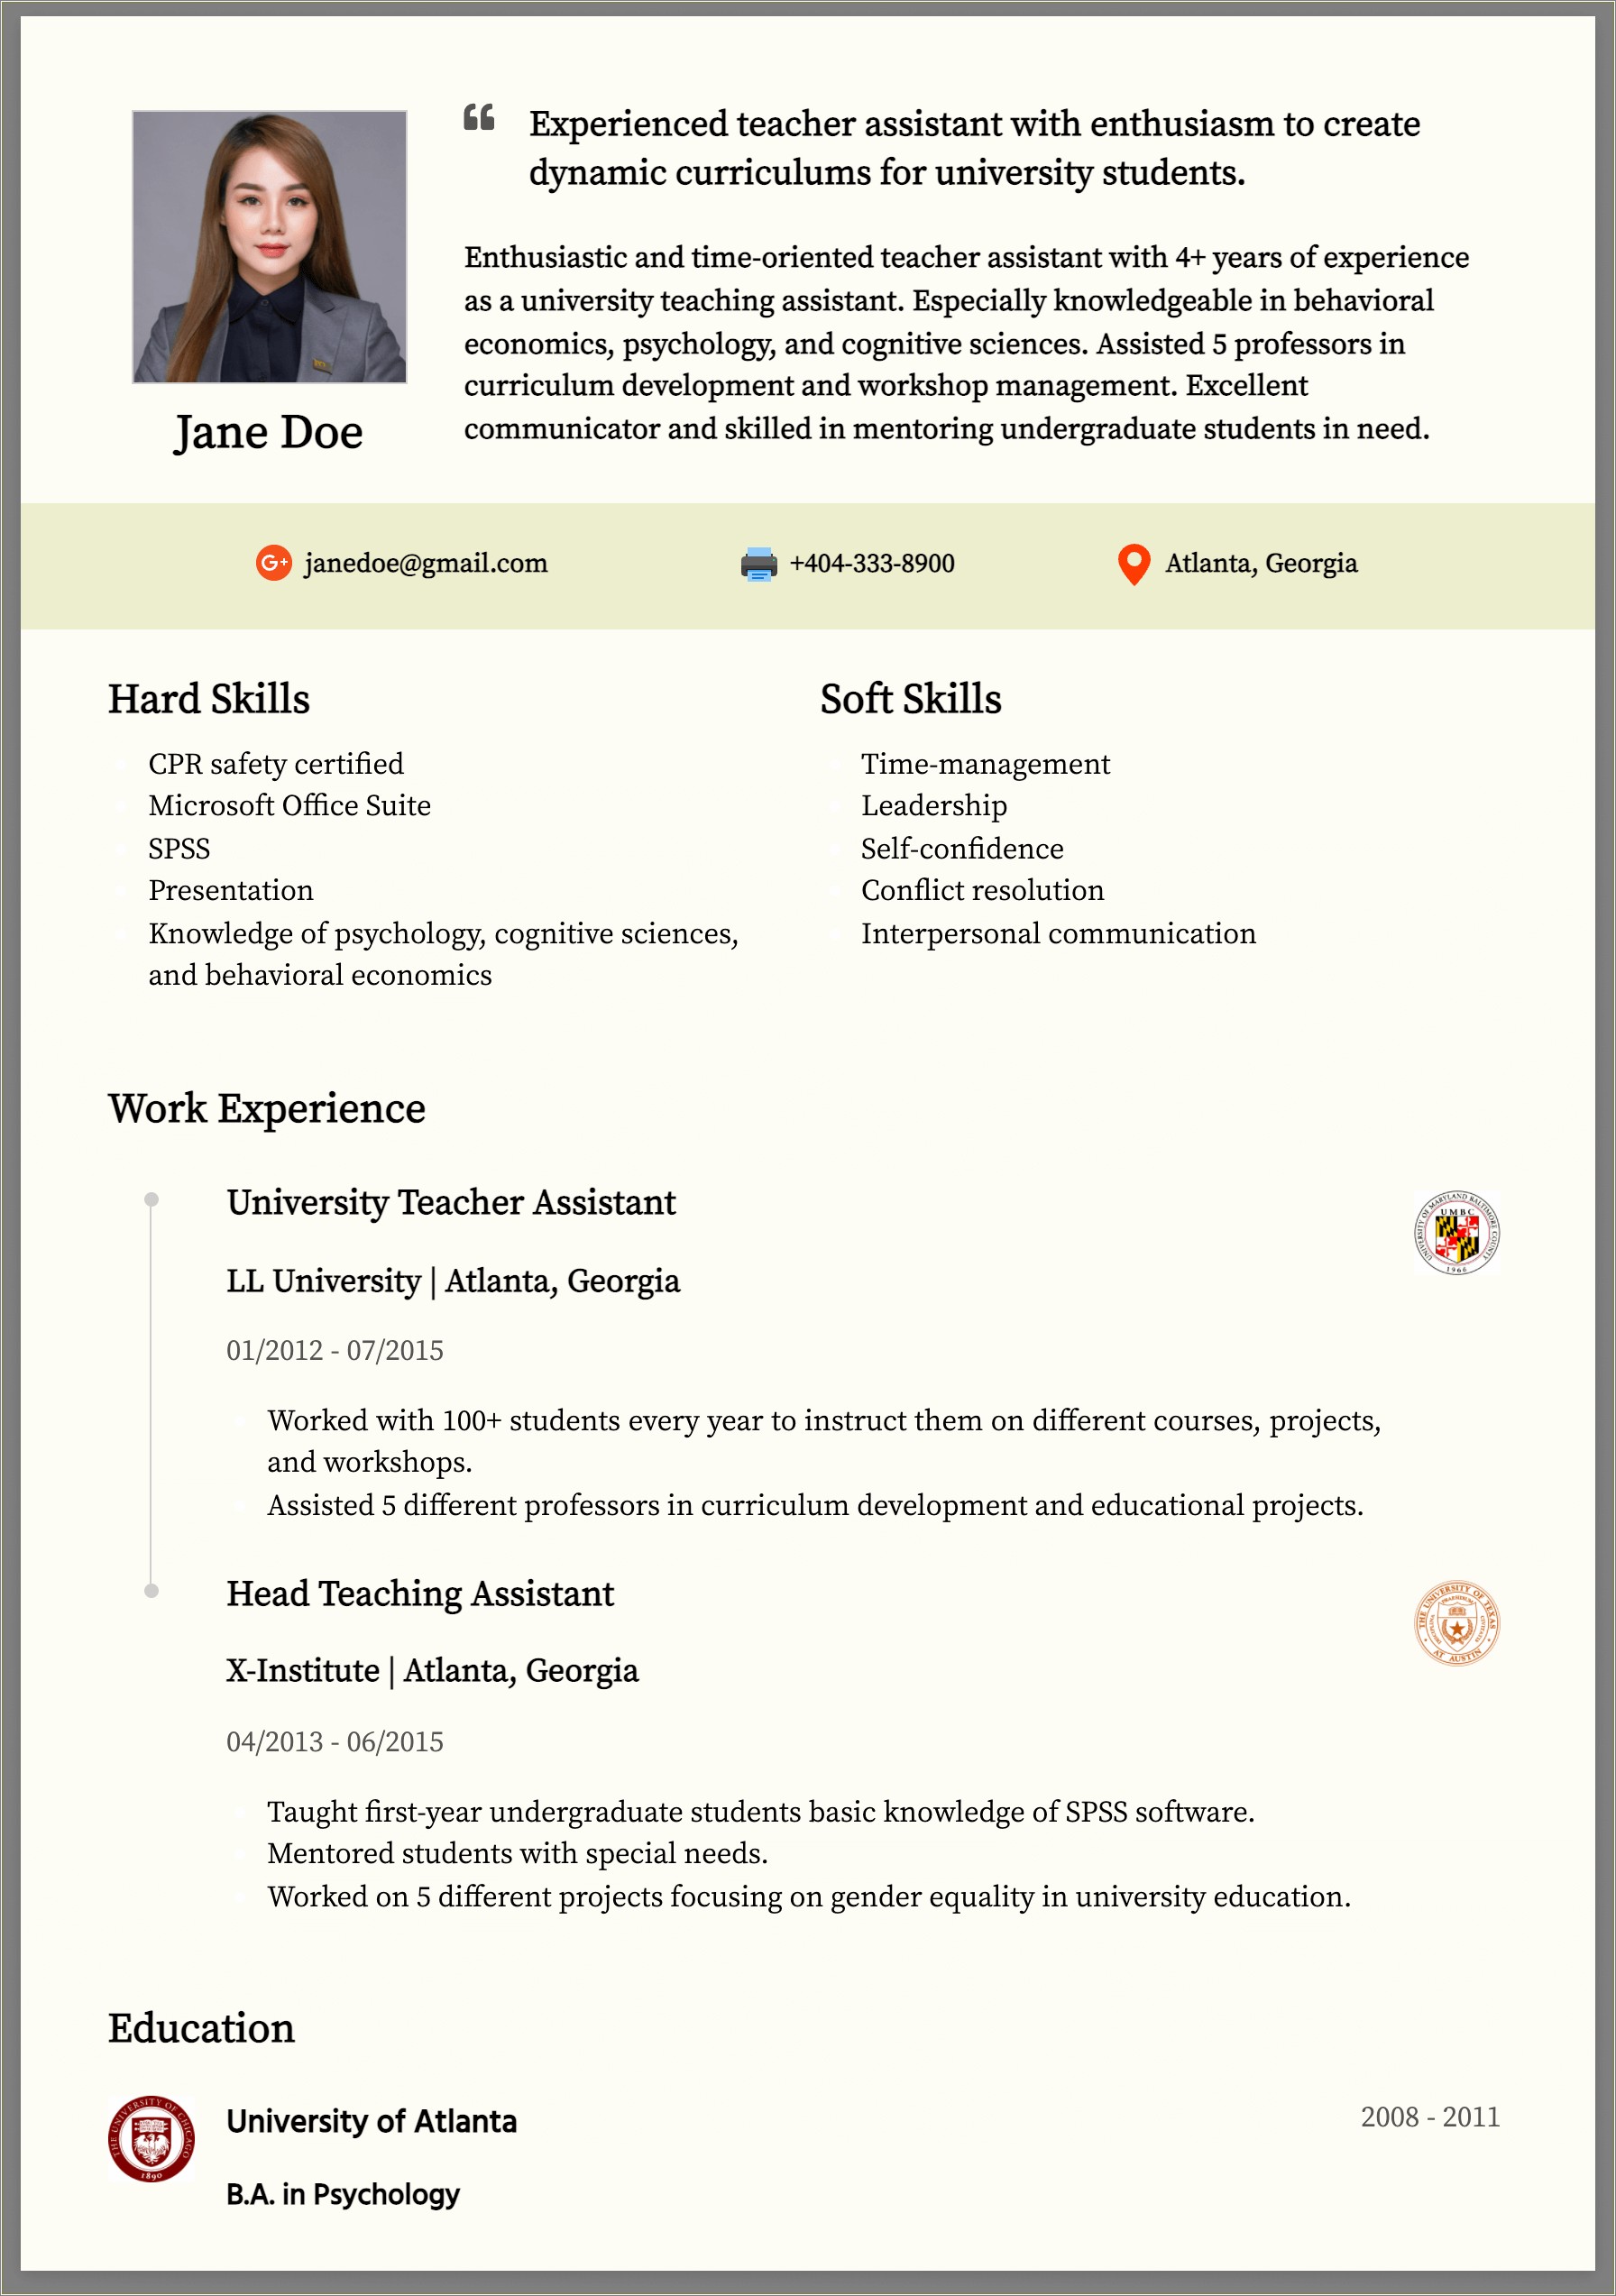 Sample Resume For Montessori Teacher Fresher